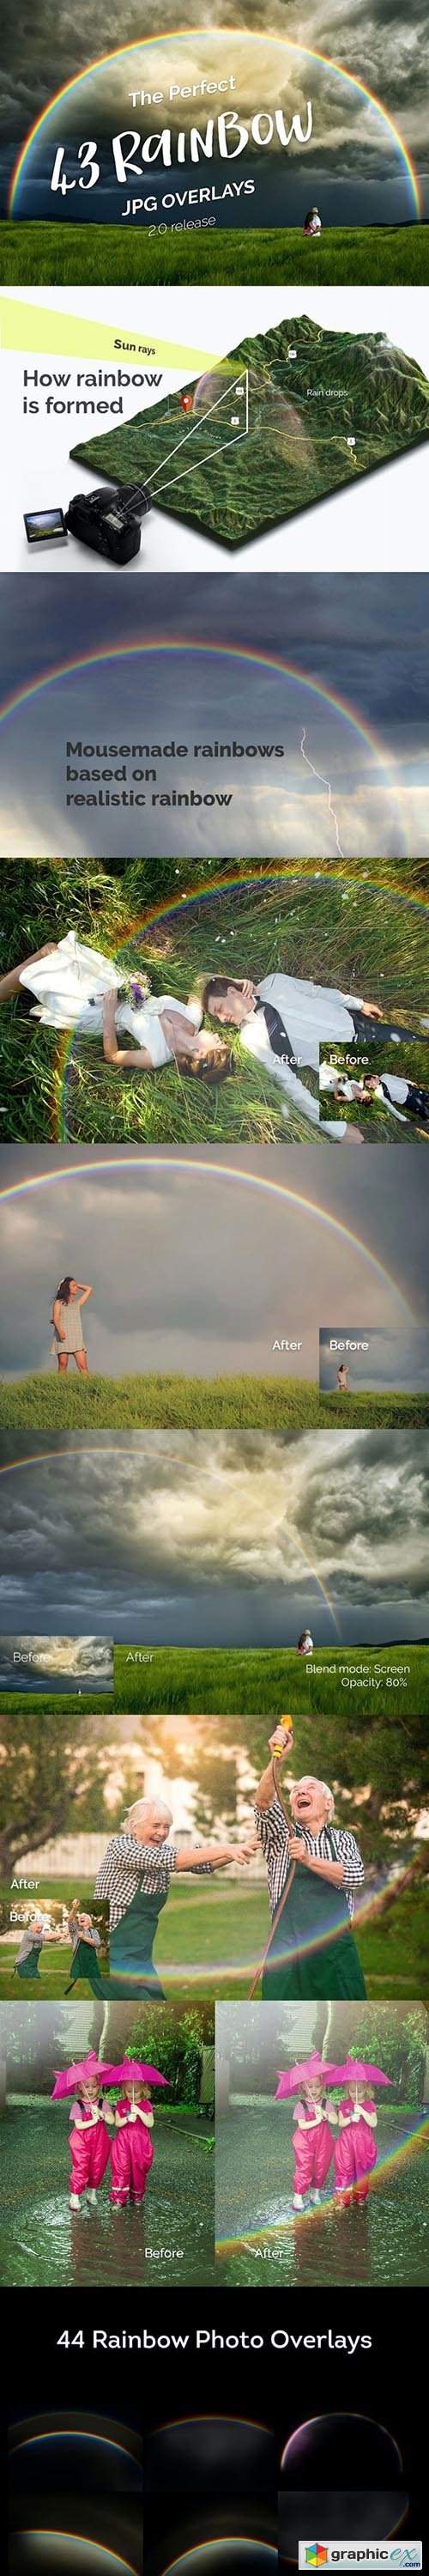 43 Rainbow Photo Overlays 2.0 